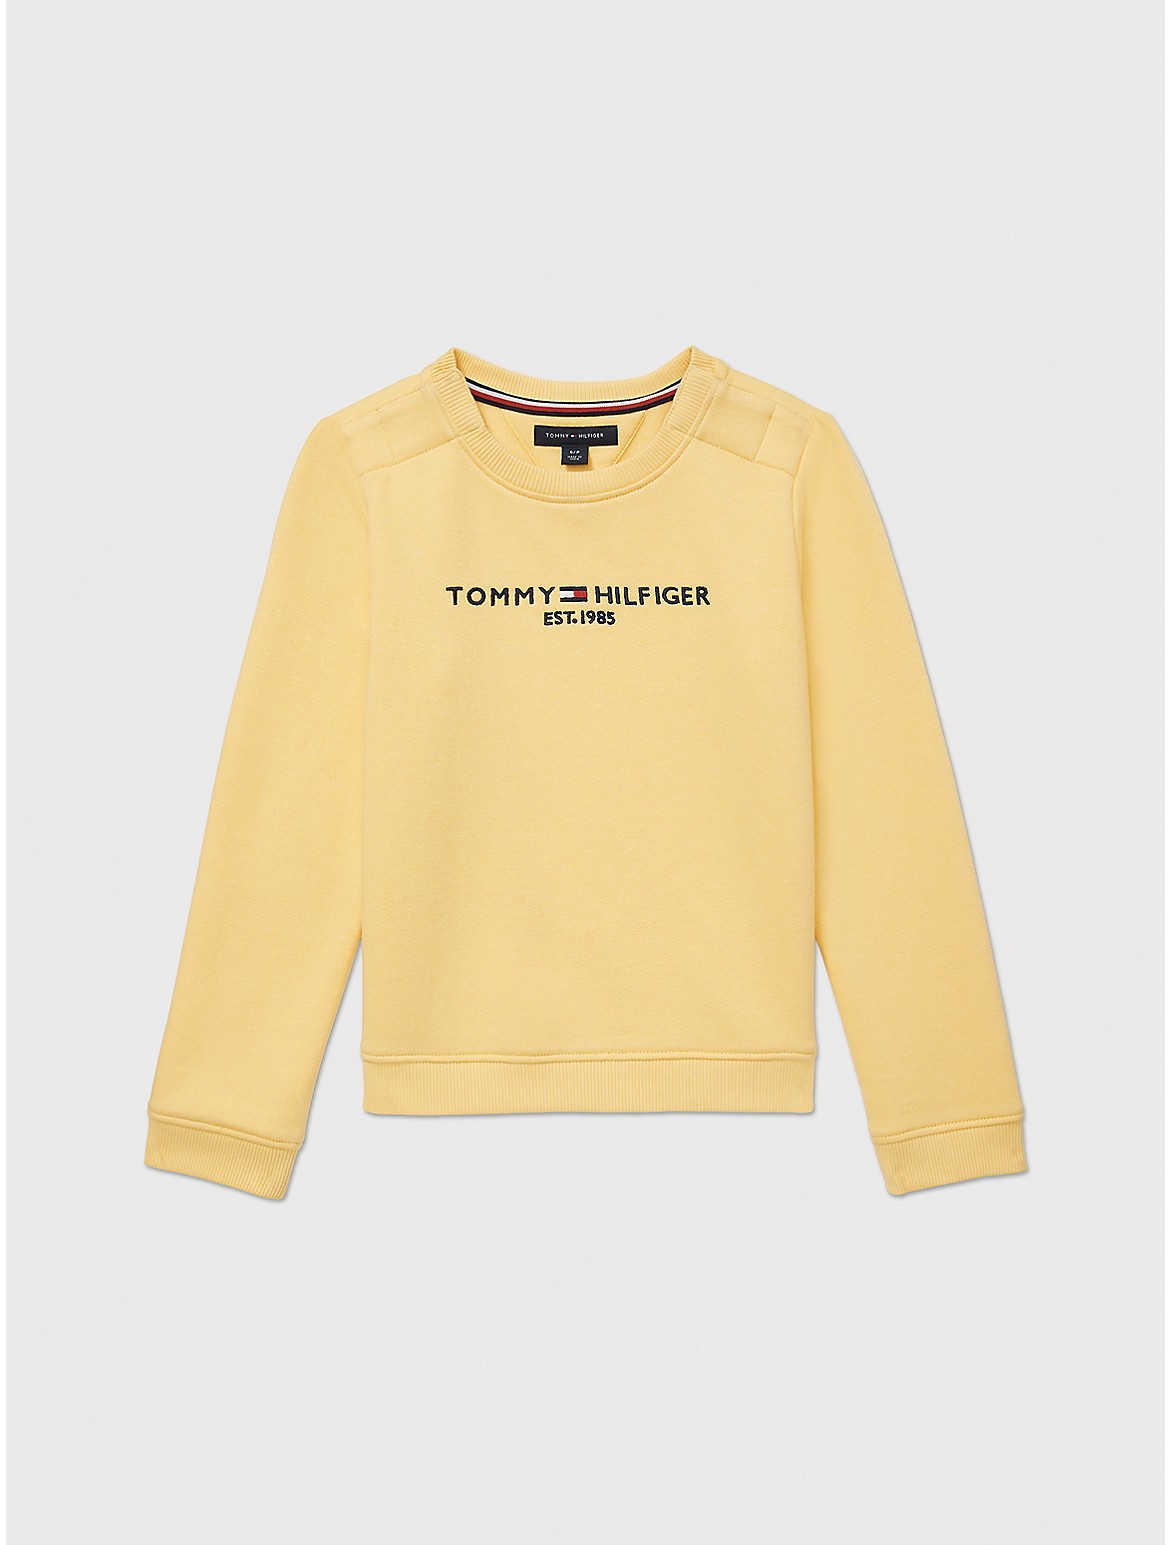 Tommy Hilfiger Girls' Kids' Logo Sweatshirt